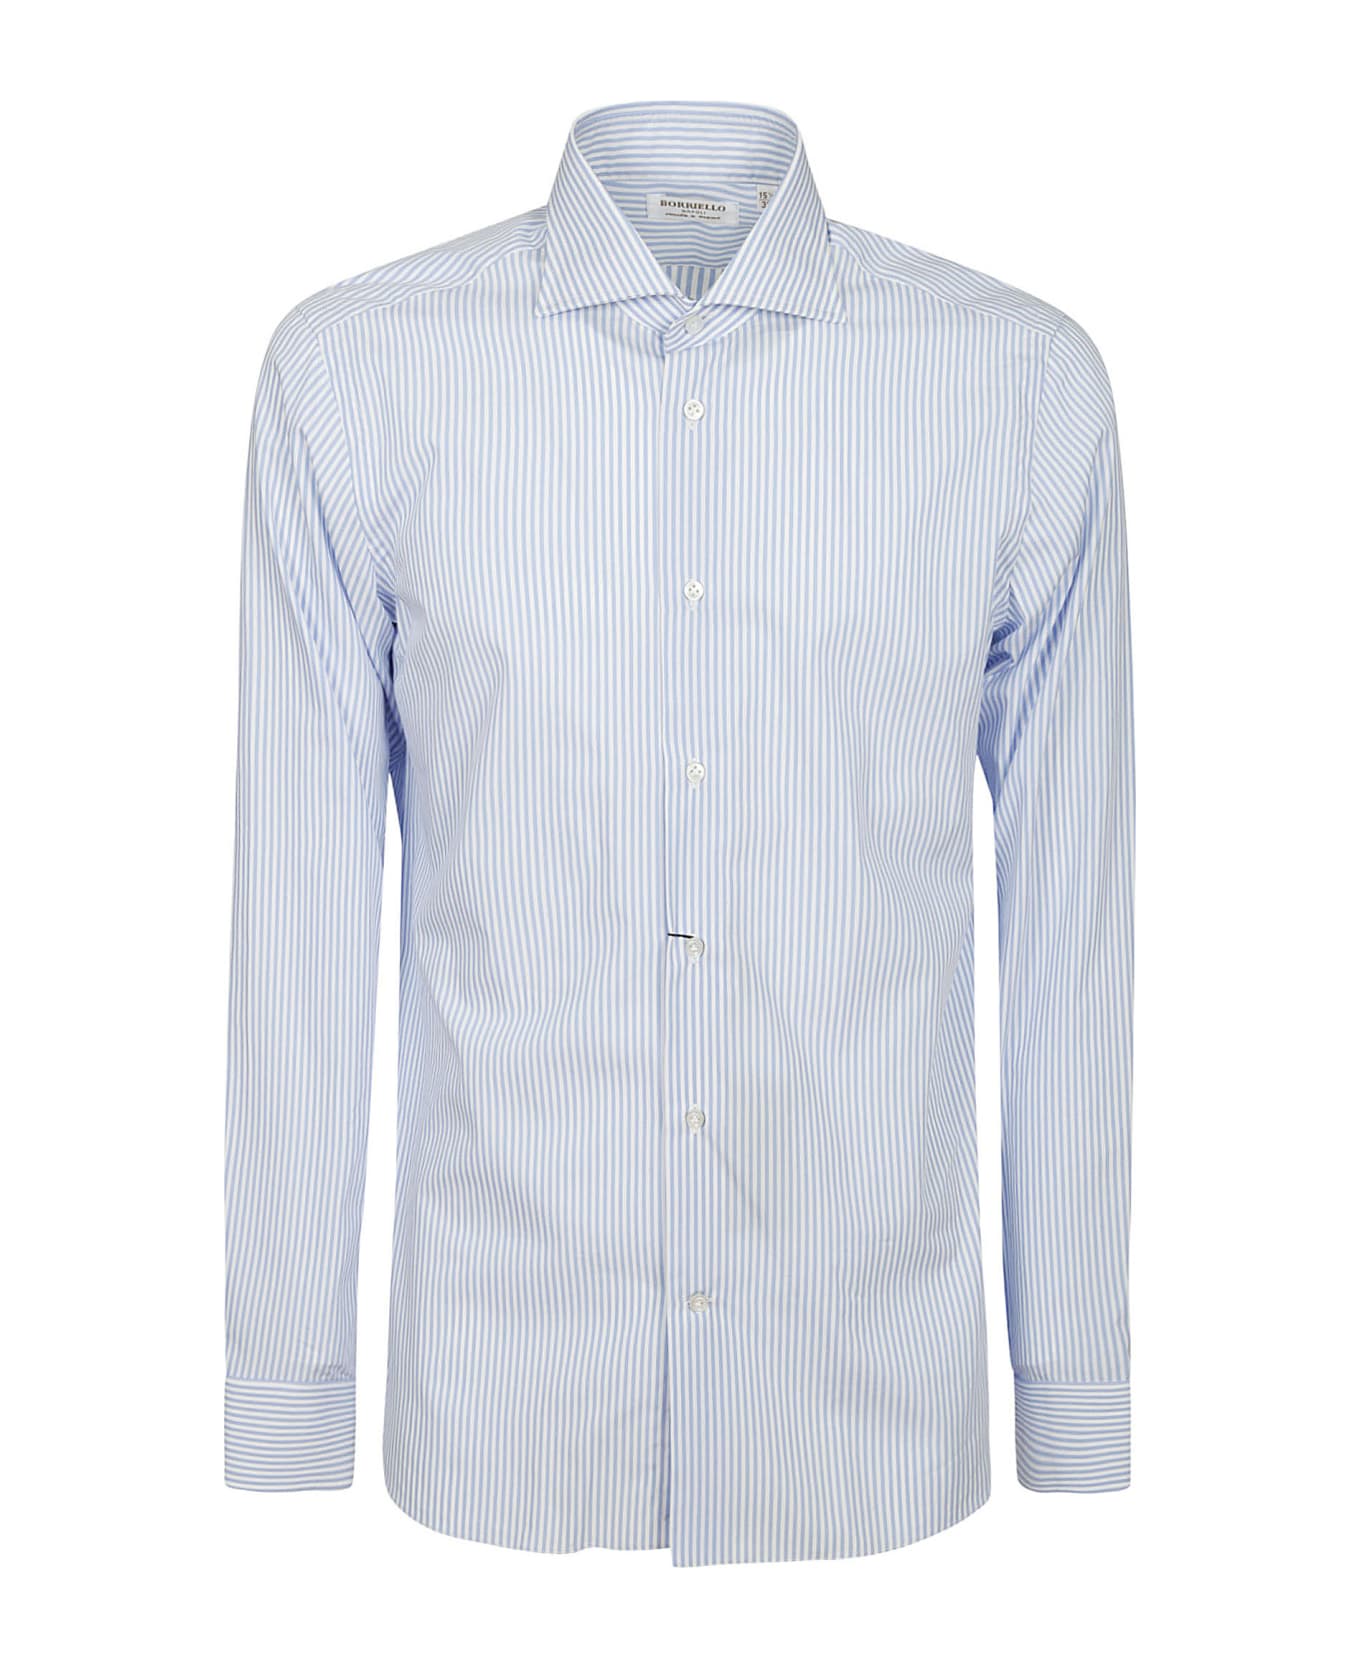 Borriello Napoli Shirt - Stripe Blue シャツ